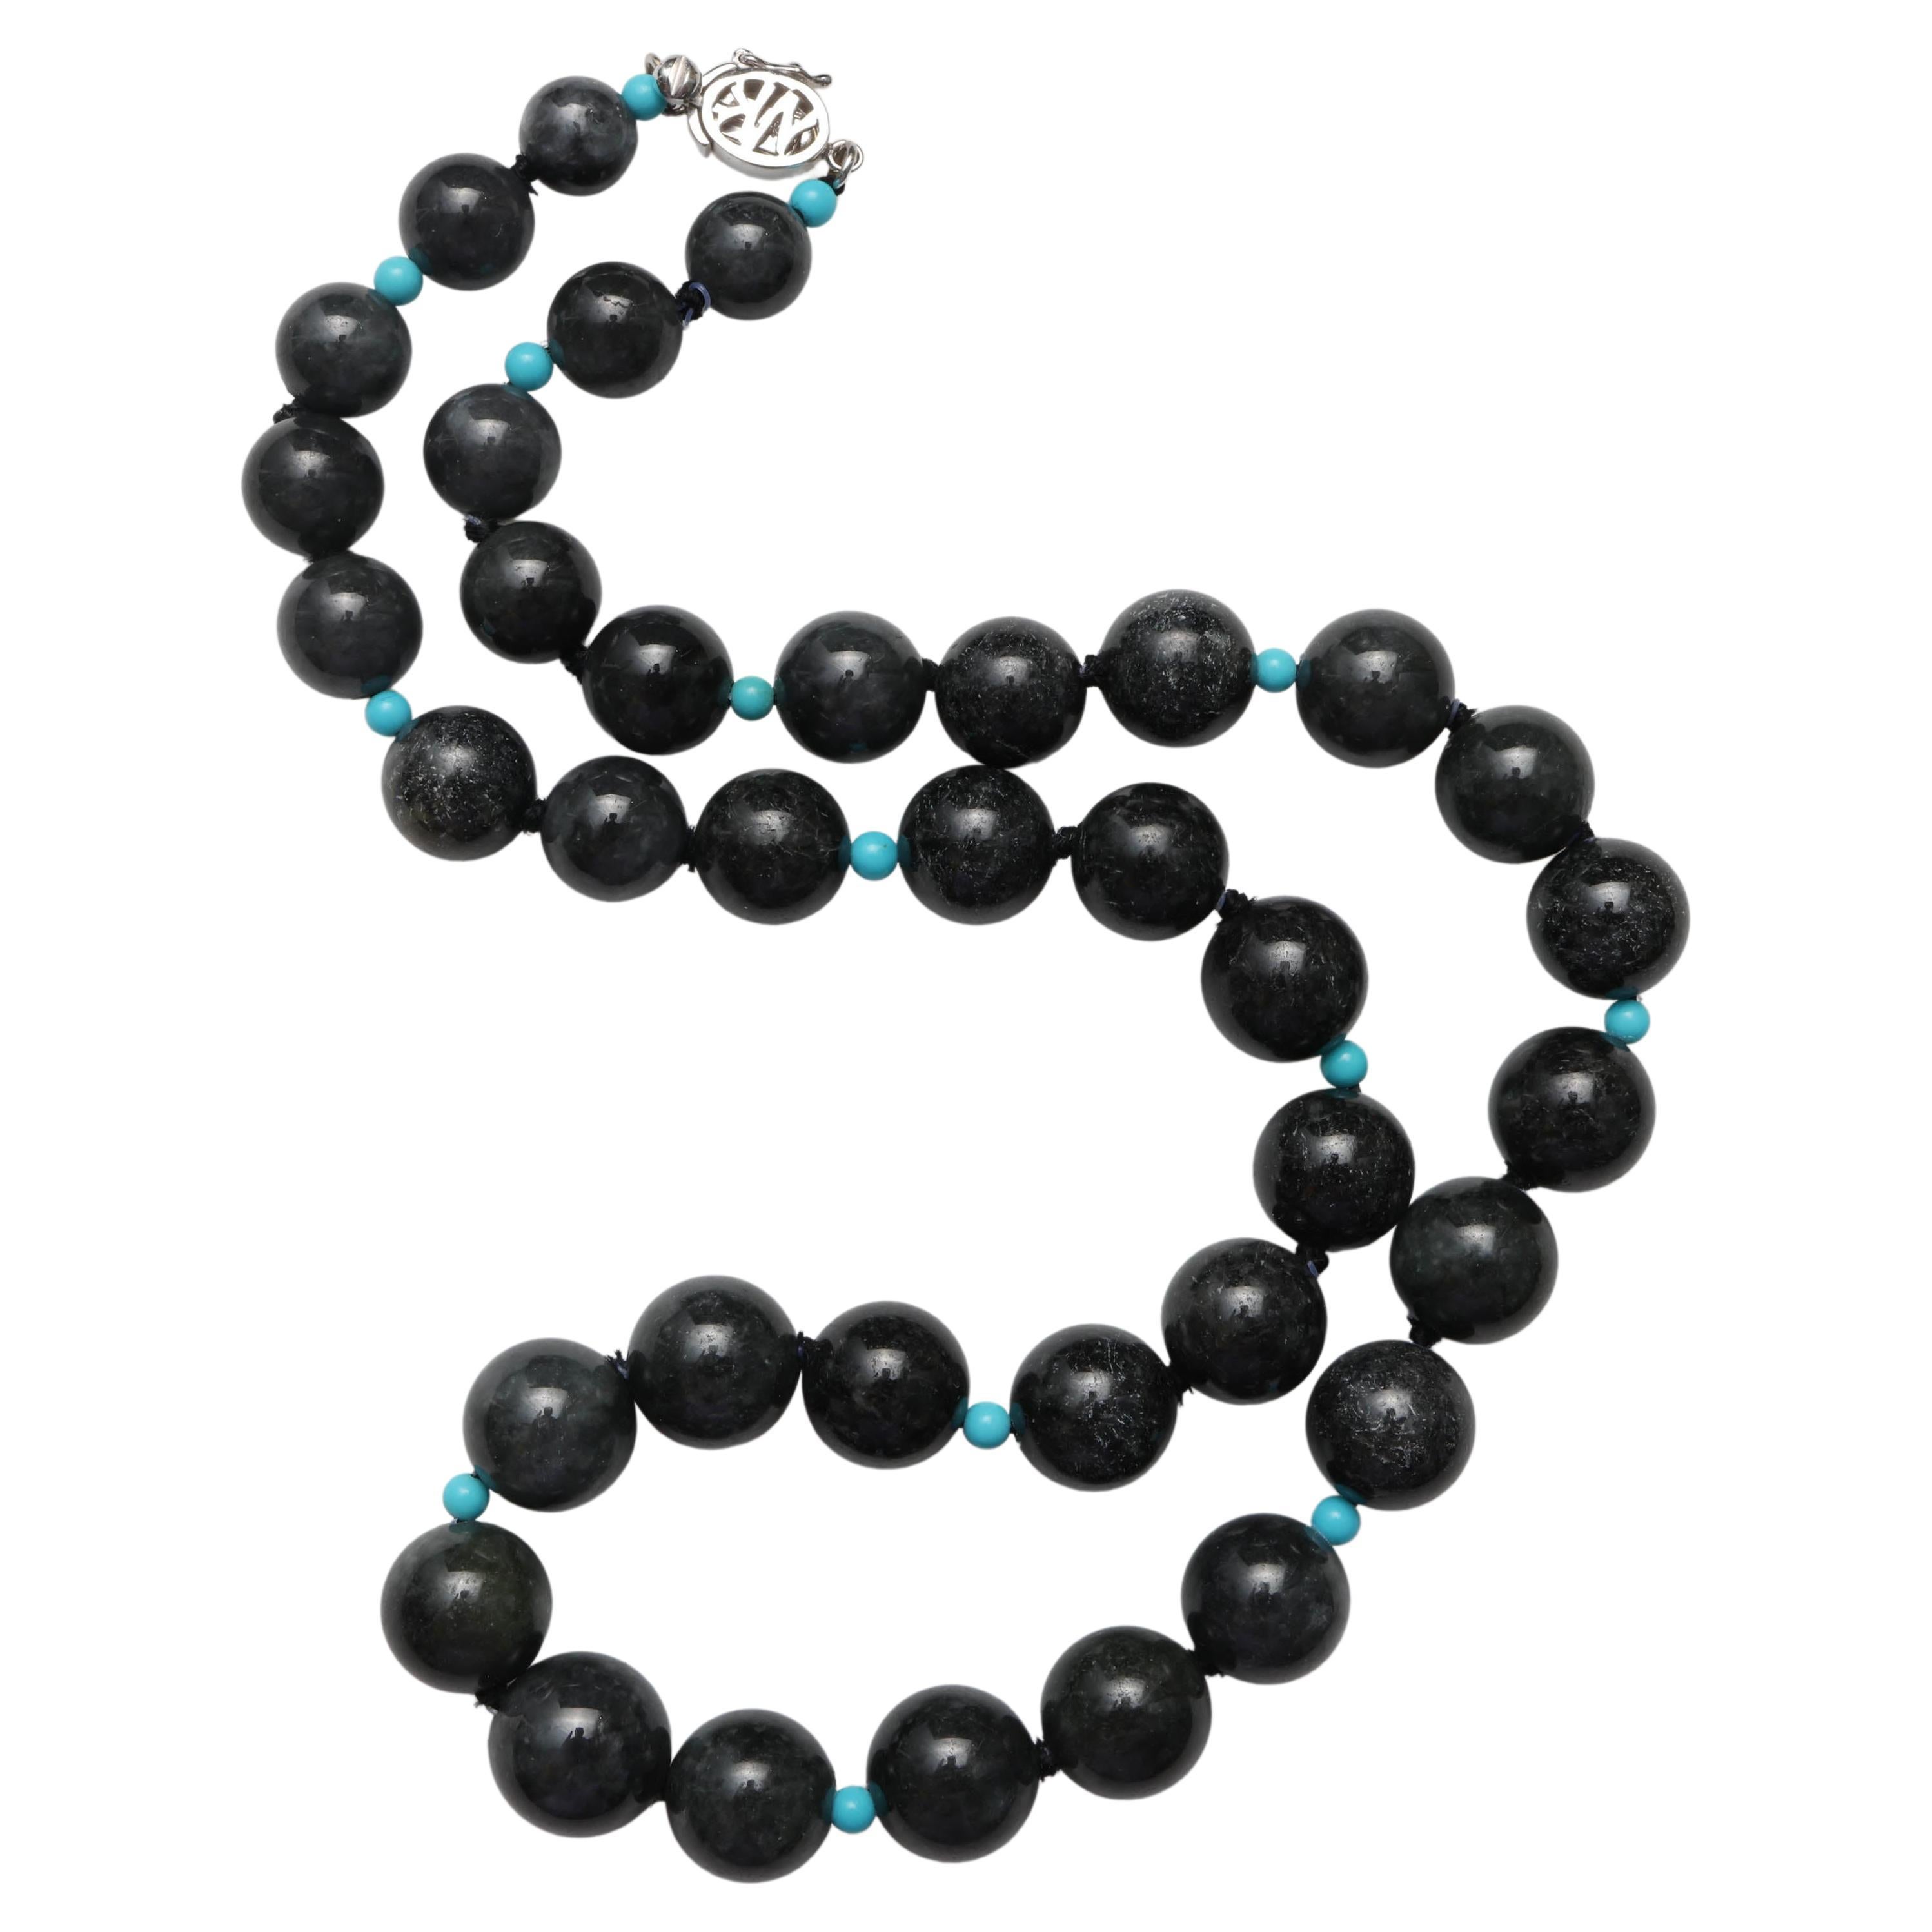 Halskette aus schwarzer Jade mit türkisfarbenem Akzent Perlen, zertifizierter unbehandelter Jadeit Jade